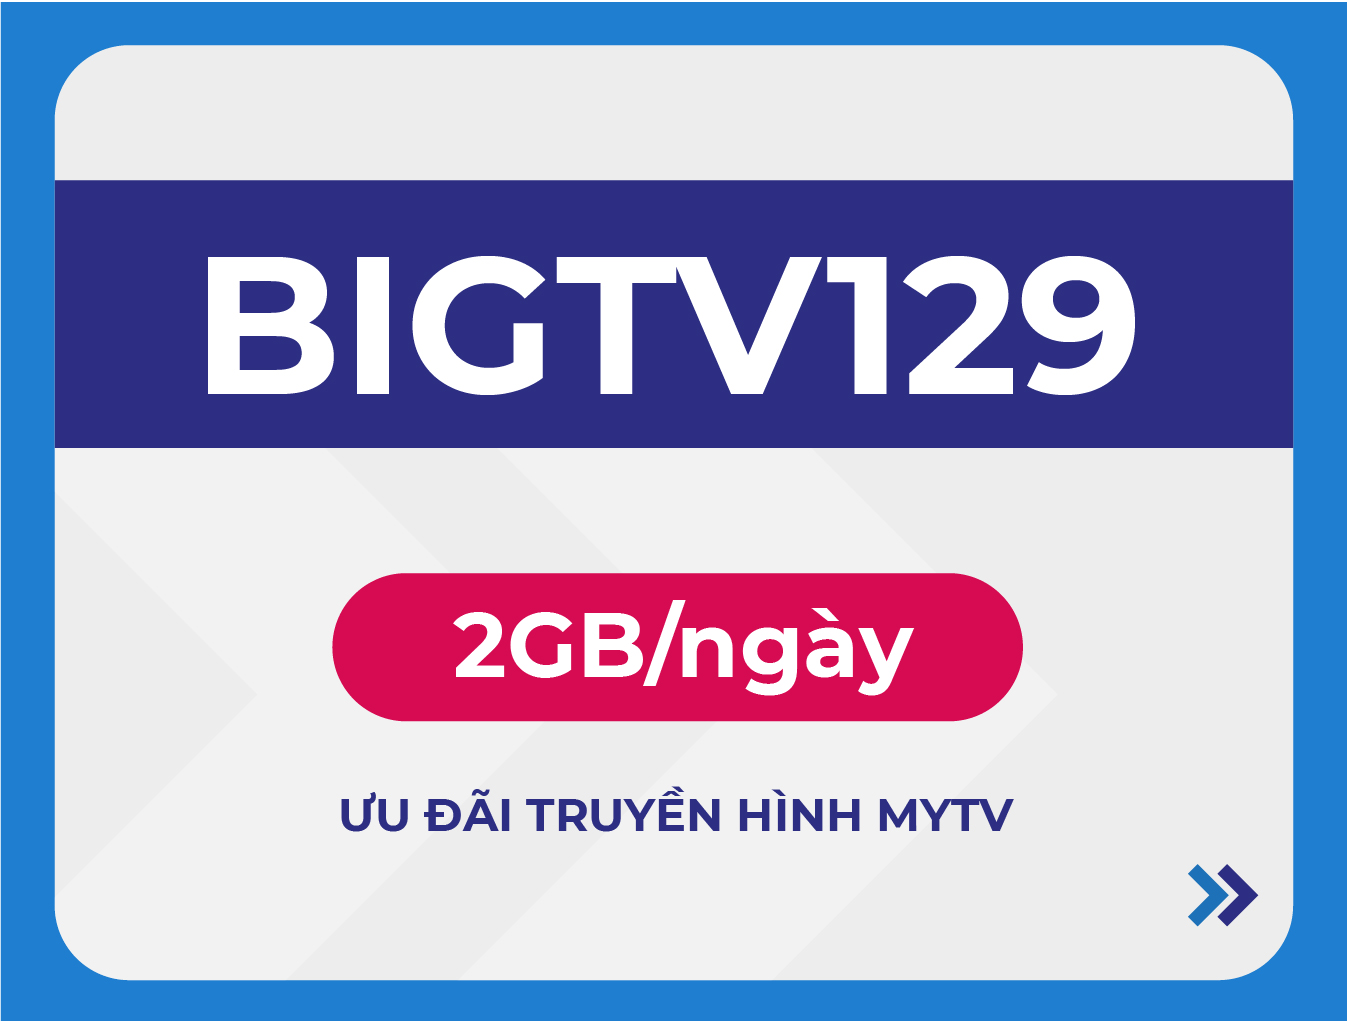 BIGTV129